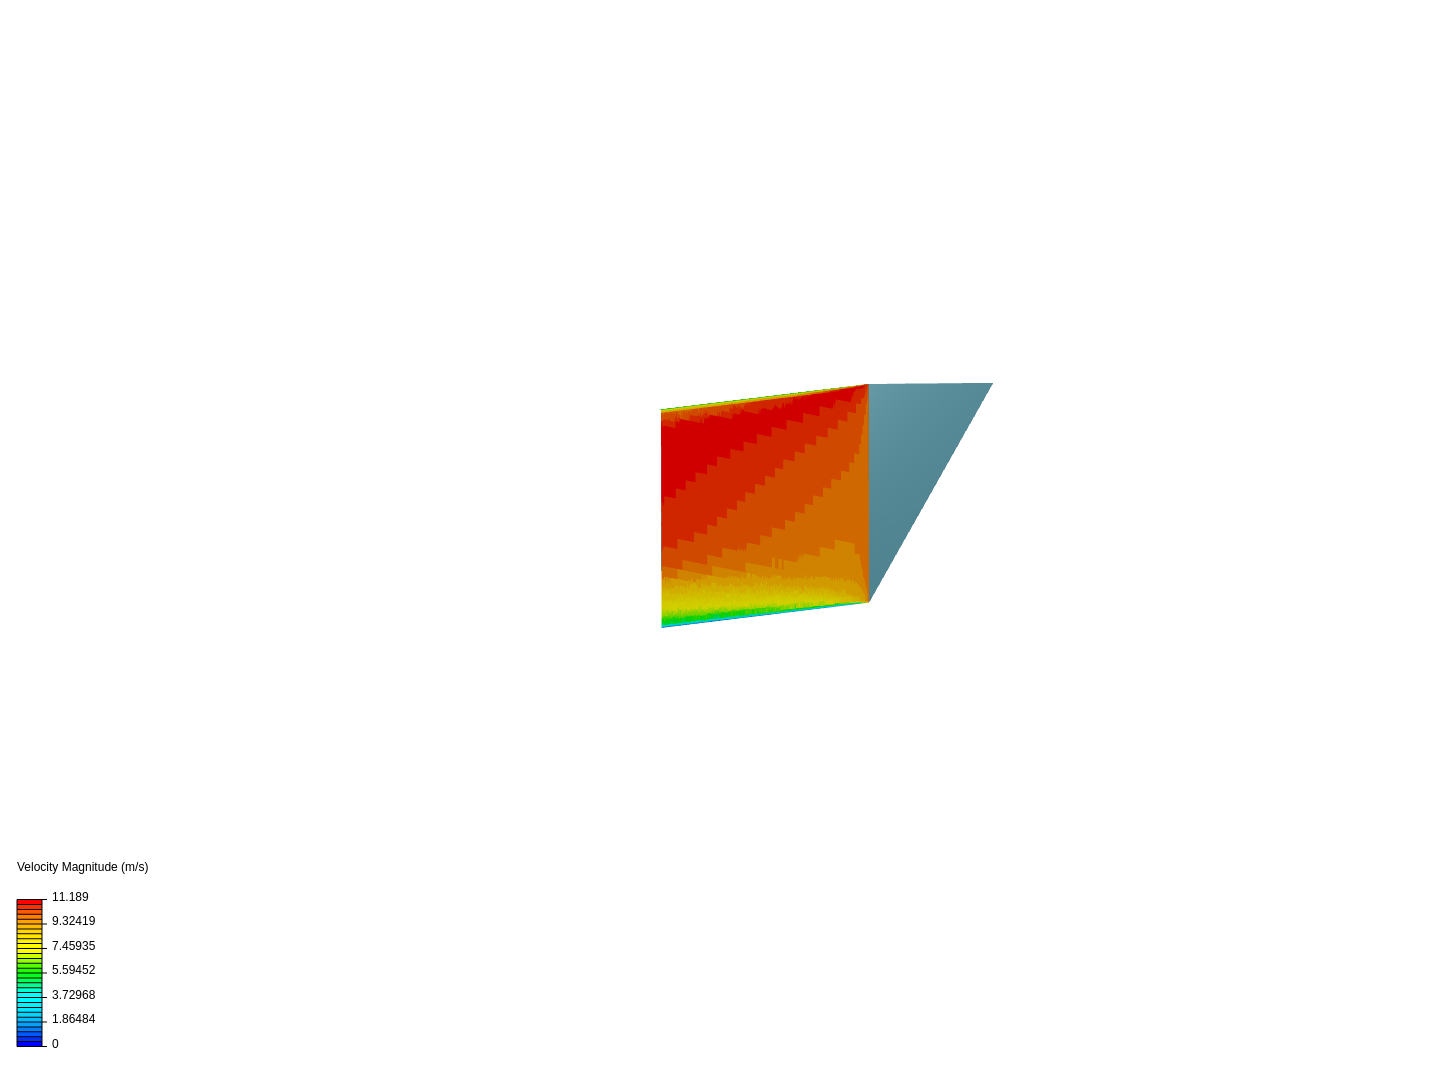 Triangular image